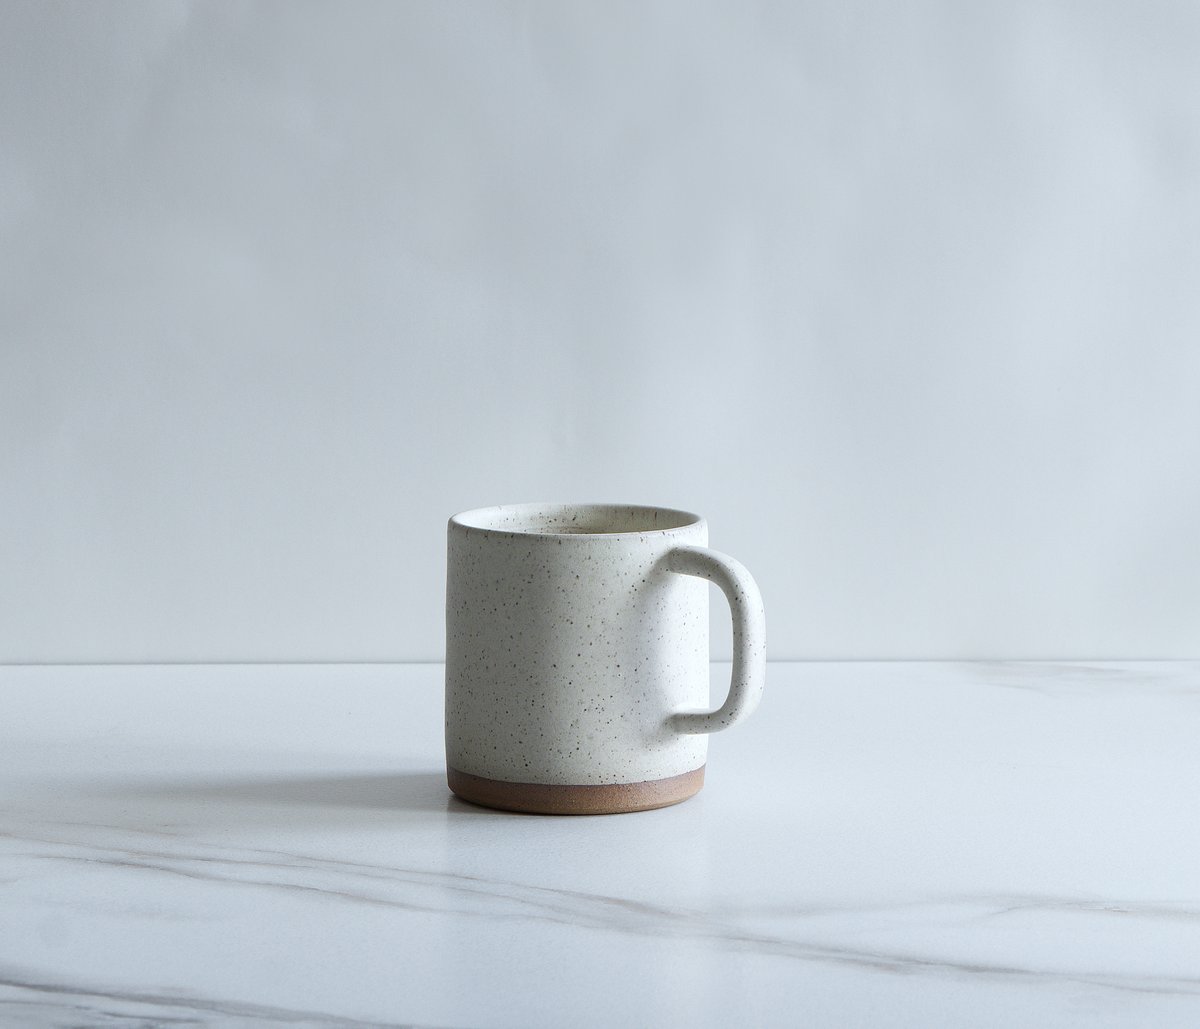 Image of 12 oz mug, glazed in Cream